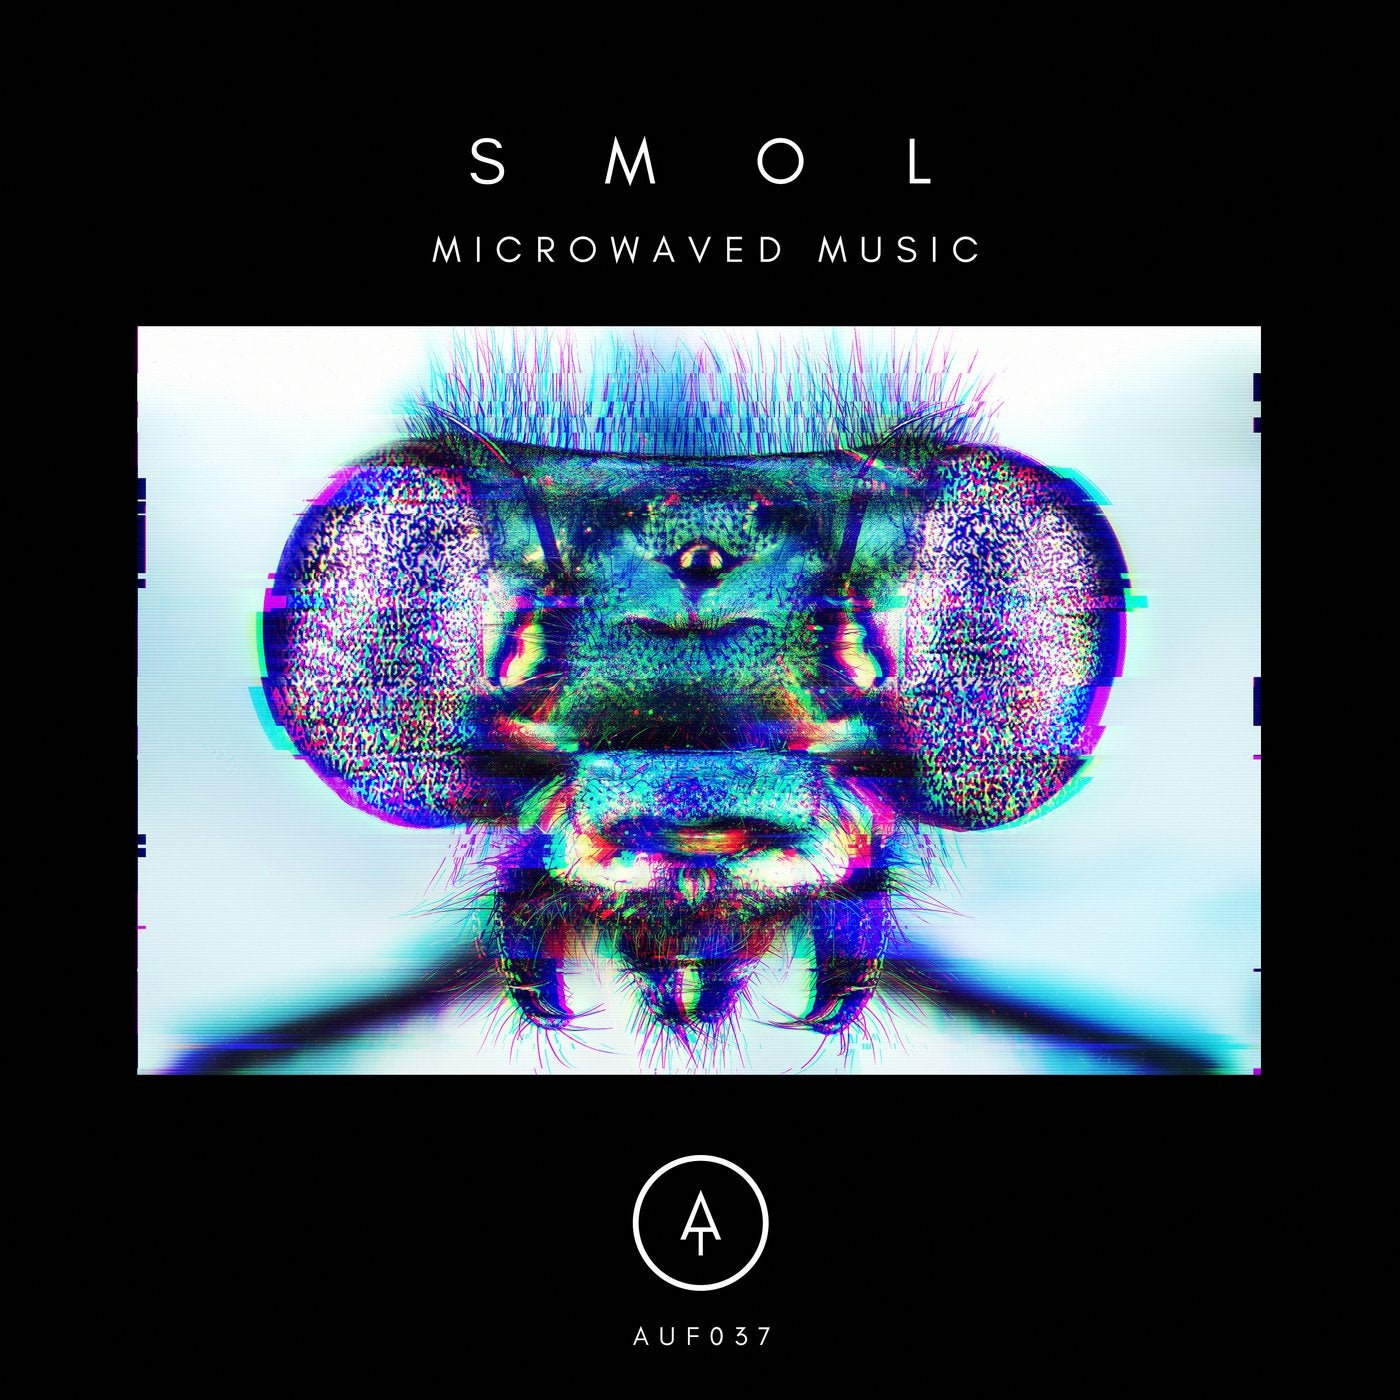 Microwaved Music